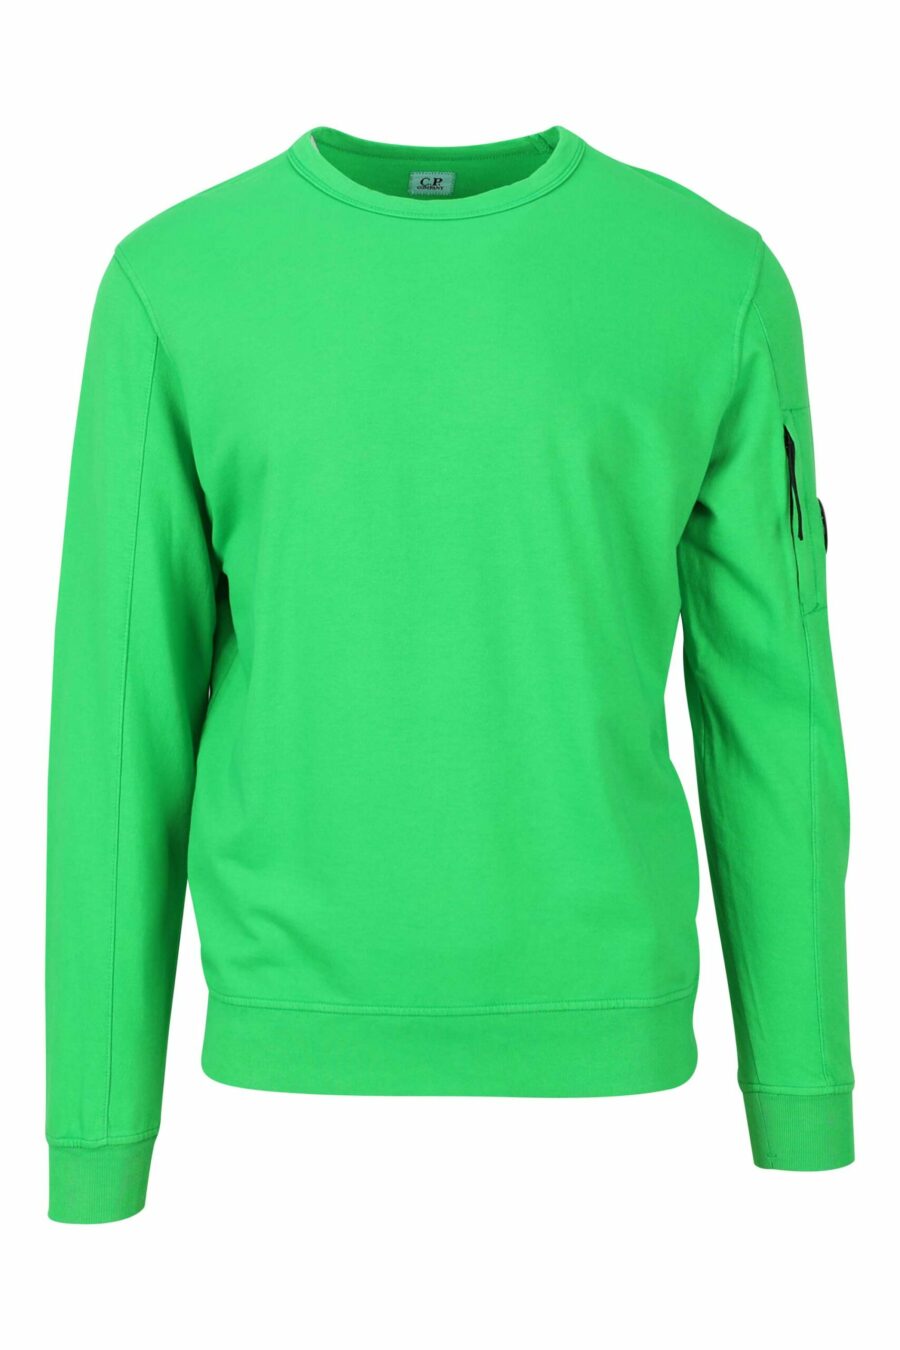 Sweatshirt vert avec lentille latérale minilogue - 7620943586725 1 à l'échelle